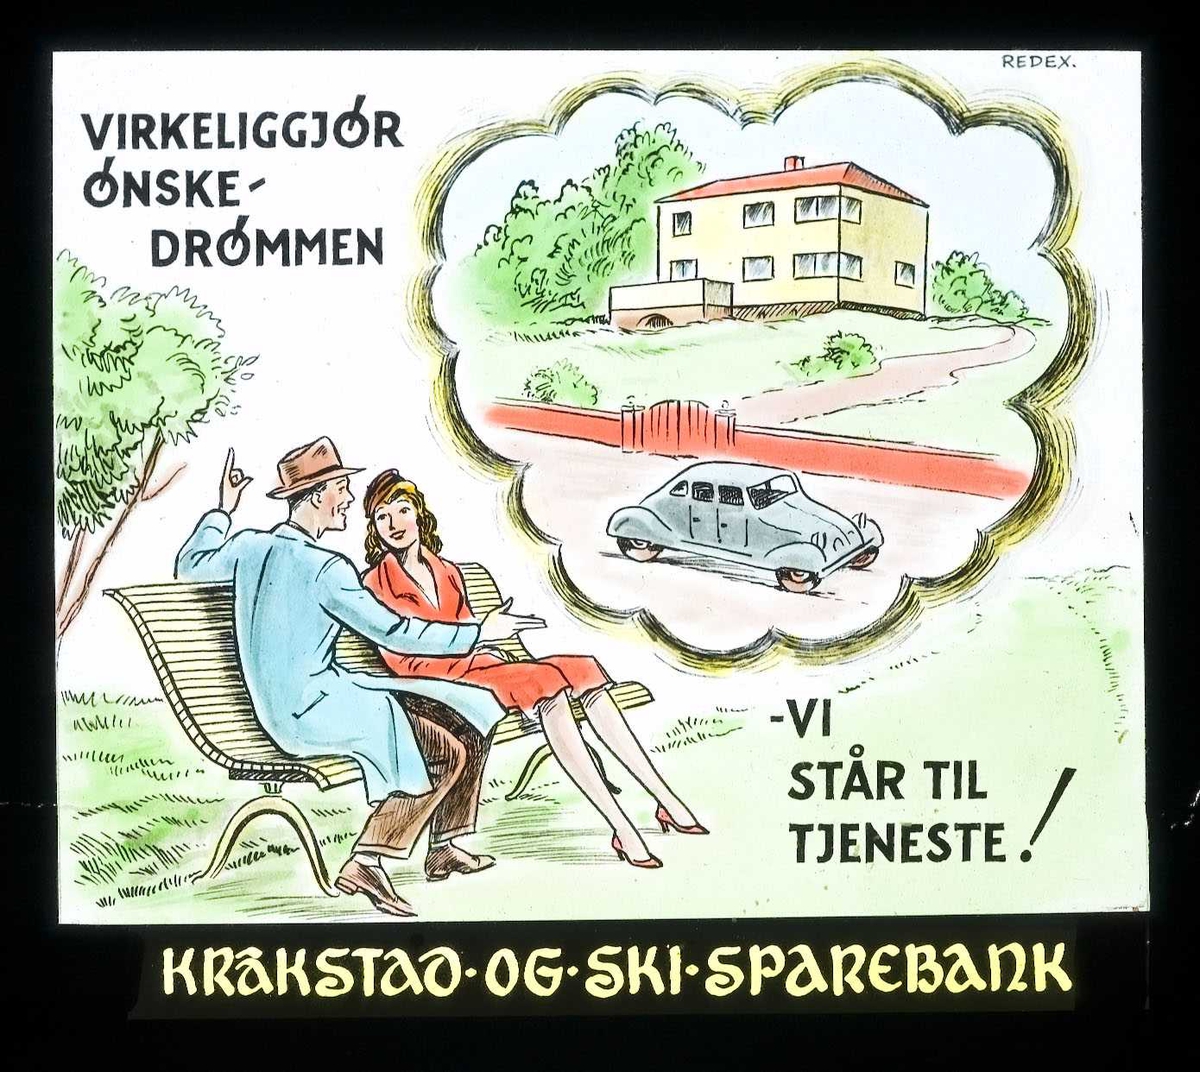 Kinoreklame fra Ski for Kråkstad og  Ski sparebank. Virkeliggjør ønskedrømmen - vi står til tjeneste!